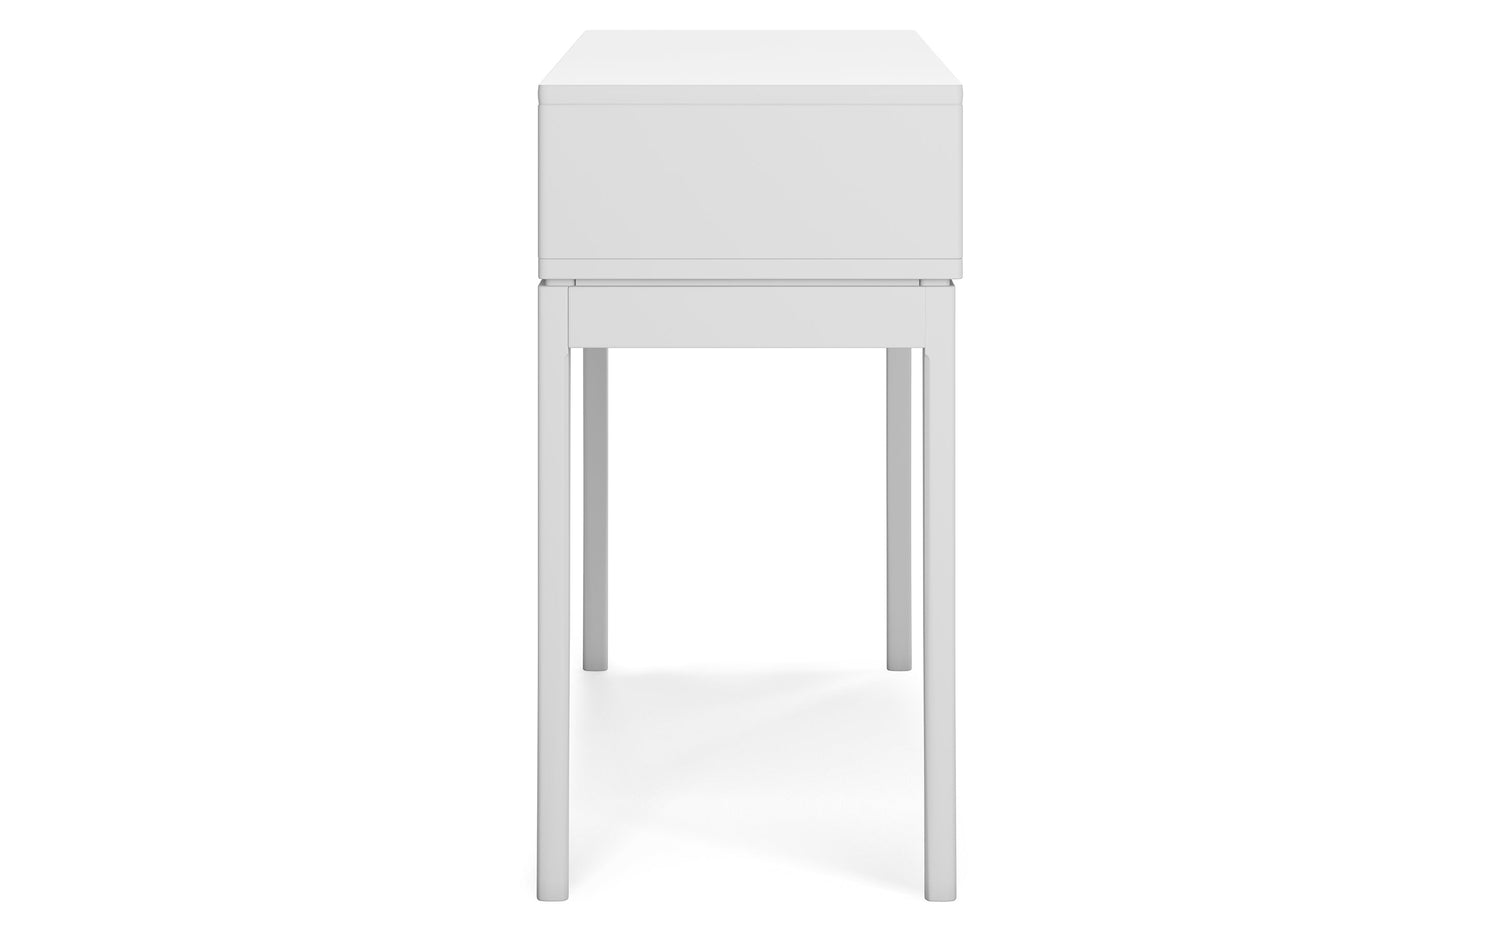 White | Harper 54 inch Console Sofa Table